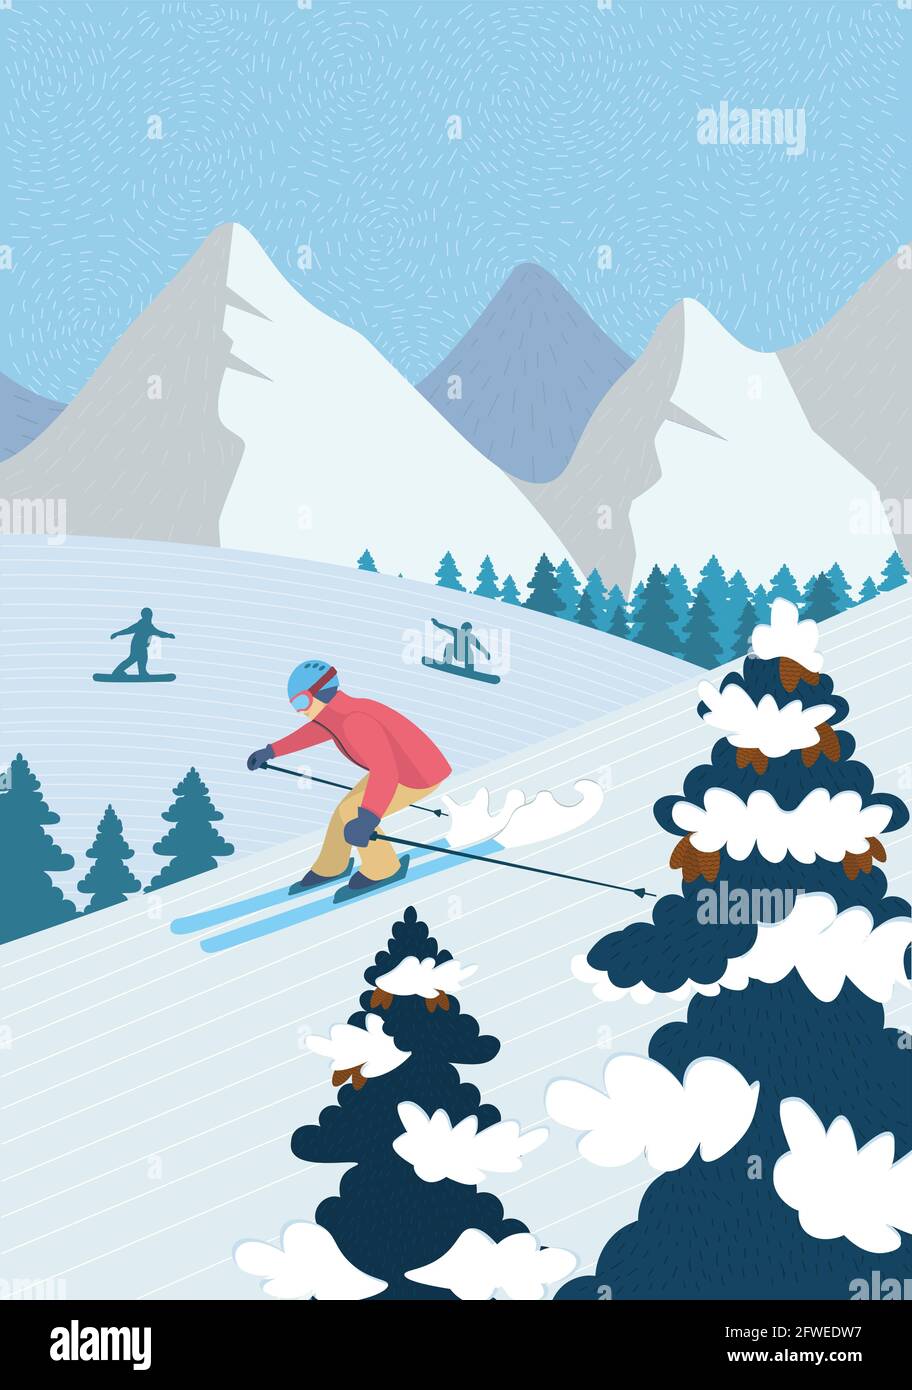 Inverno poster a mano attività ricreative in montagna alpina. Sciatore discesa sci giù nevoso pendio. Gli atleti snowboarder cavalcano lo snowboard. Sport all'aperto nella stazione sciistica banner illustrazione vettoriale Illustrazione Vettoriale